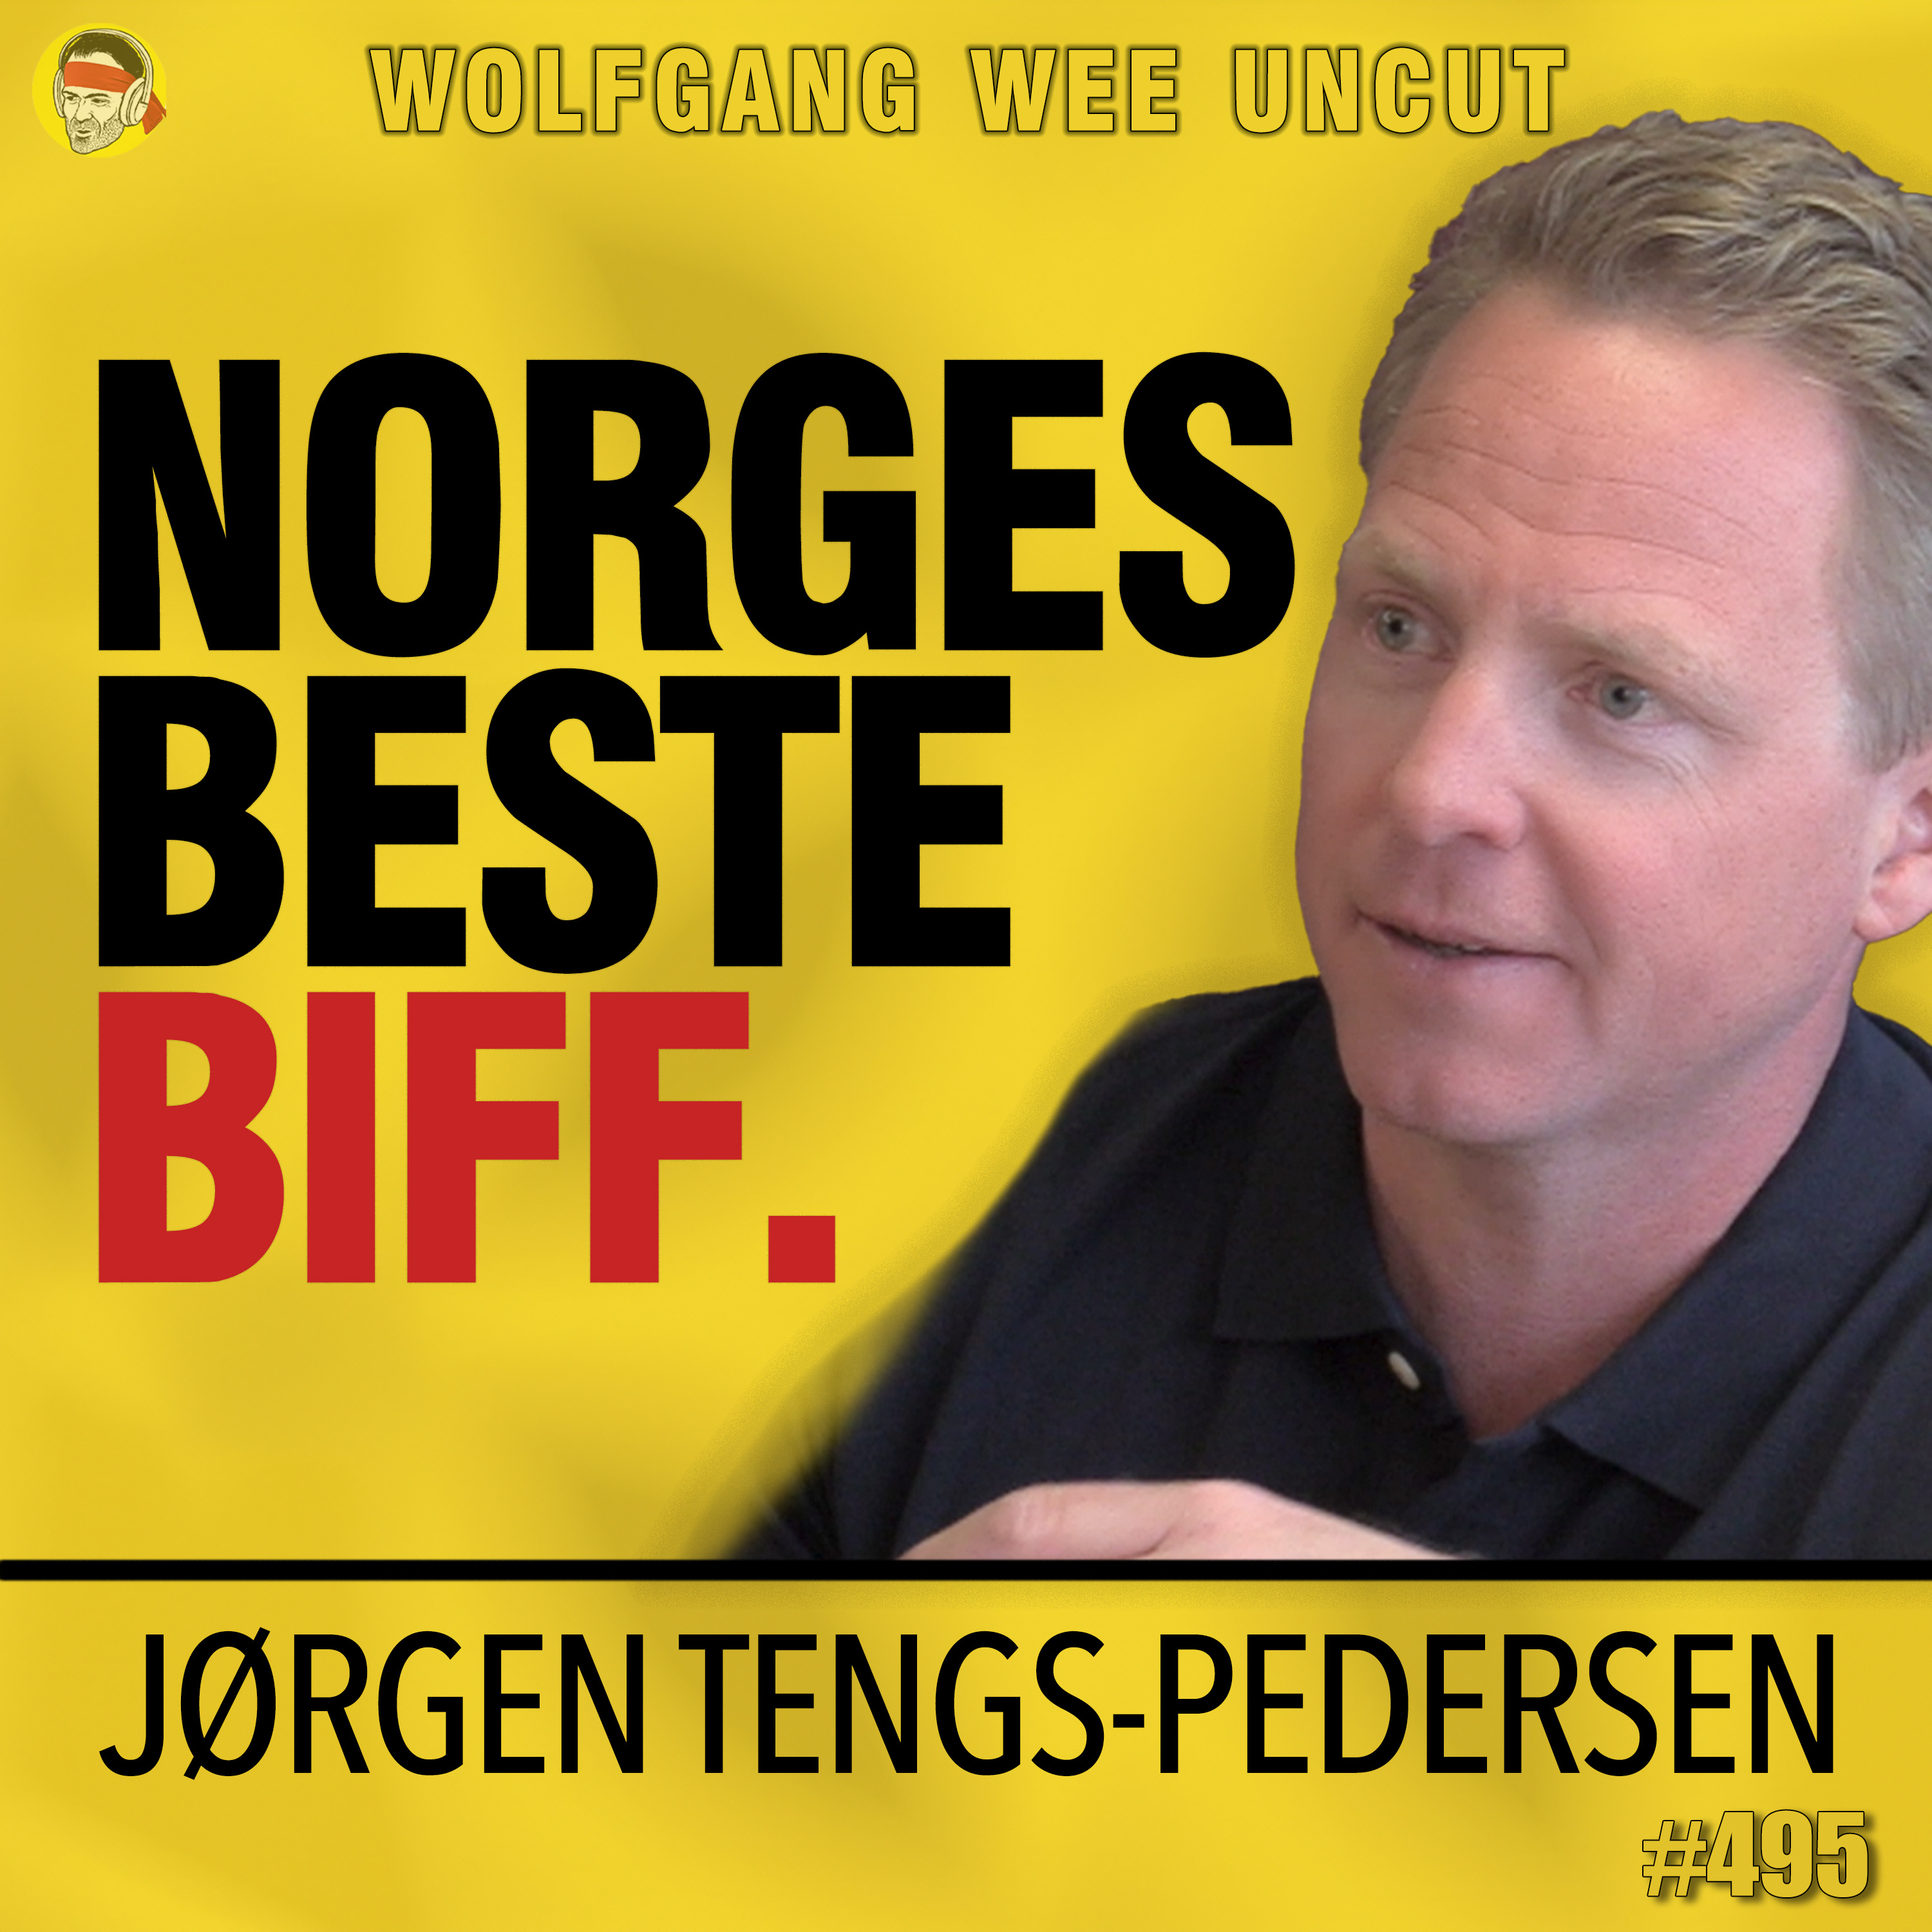 Jørgen Tengs-Pedersen | Norges Beste Biff, Brasiliansk vs Norsk Biffkultur, Marmorering, Gressfora, Kjøttpolitikk, Kjøttdeig, Selvforsyning, TT Meat